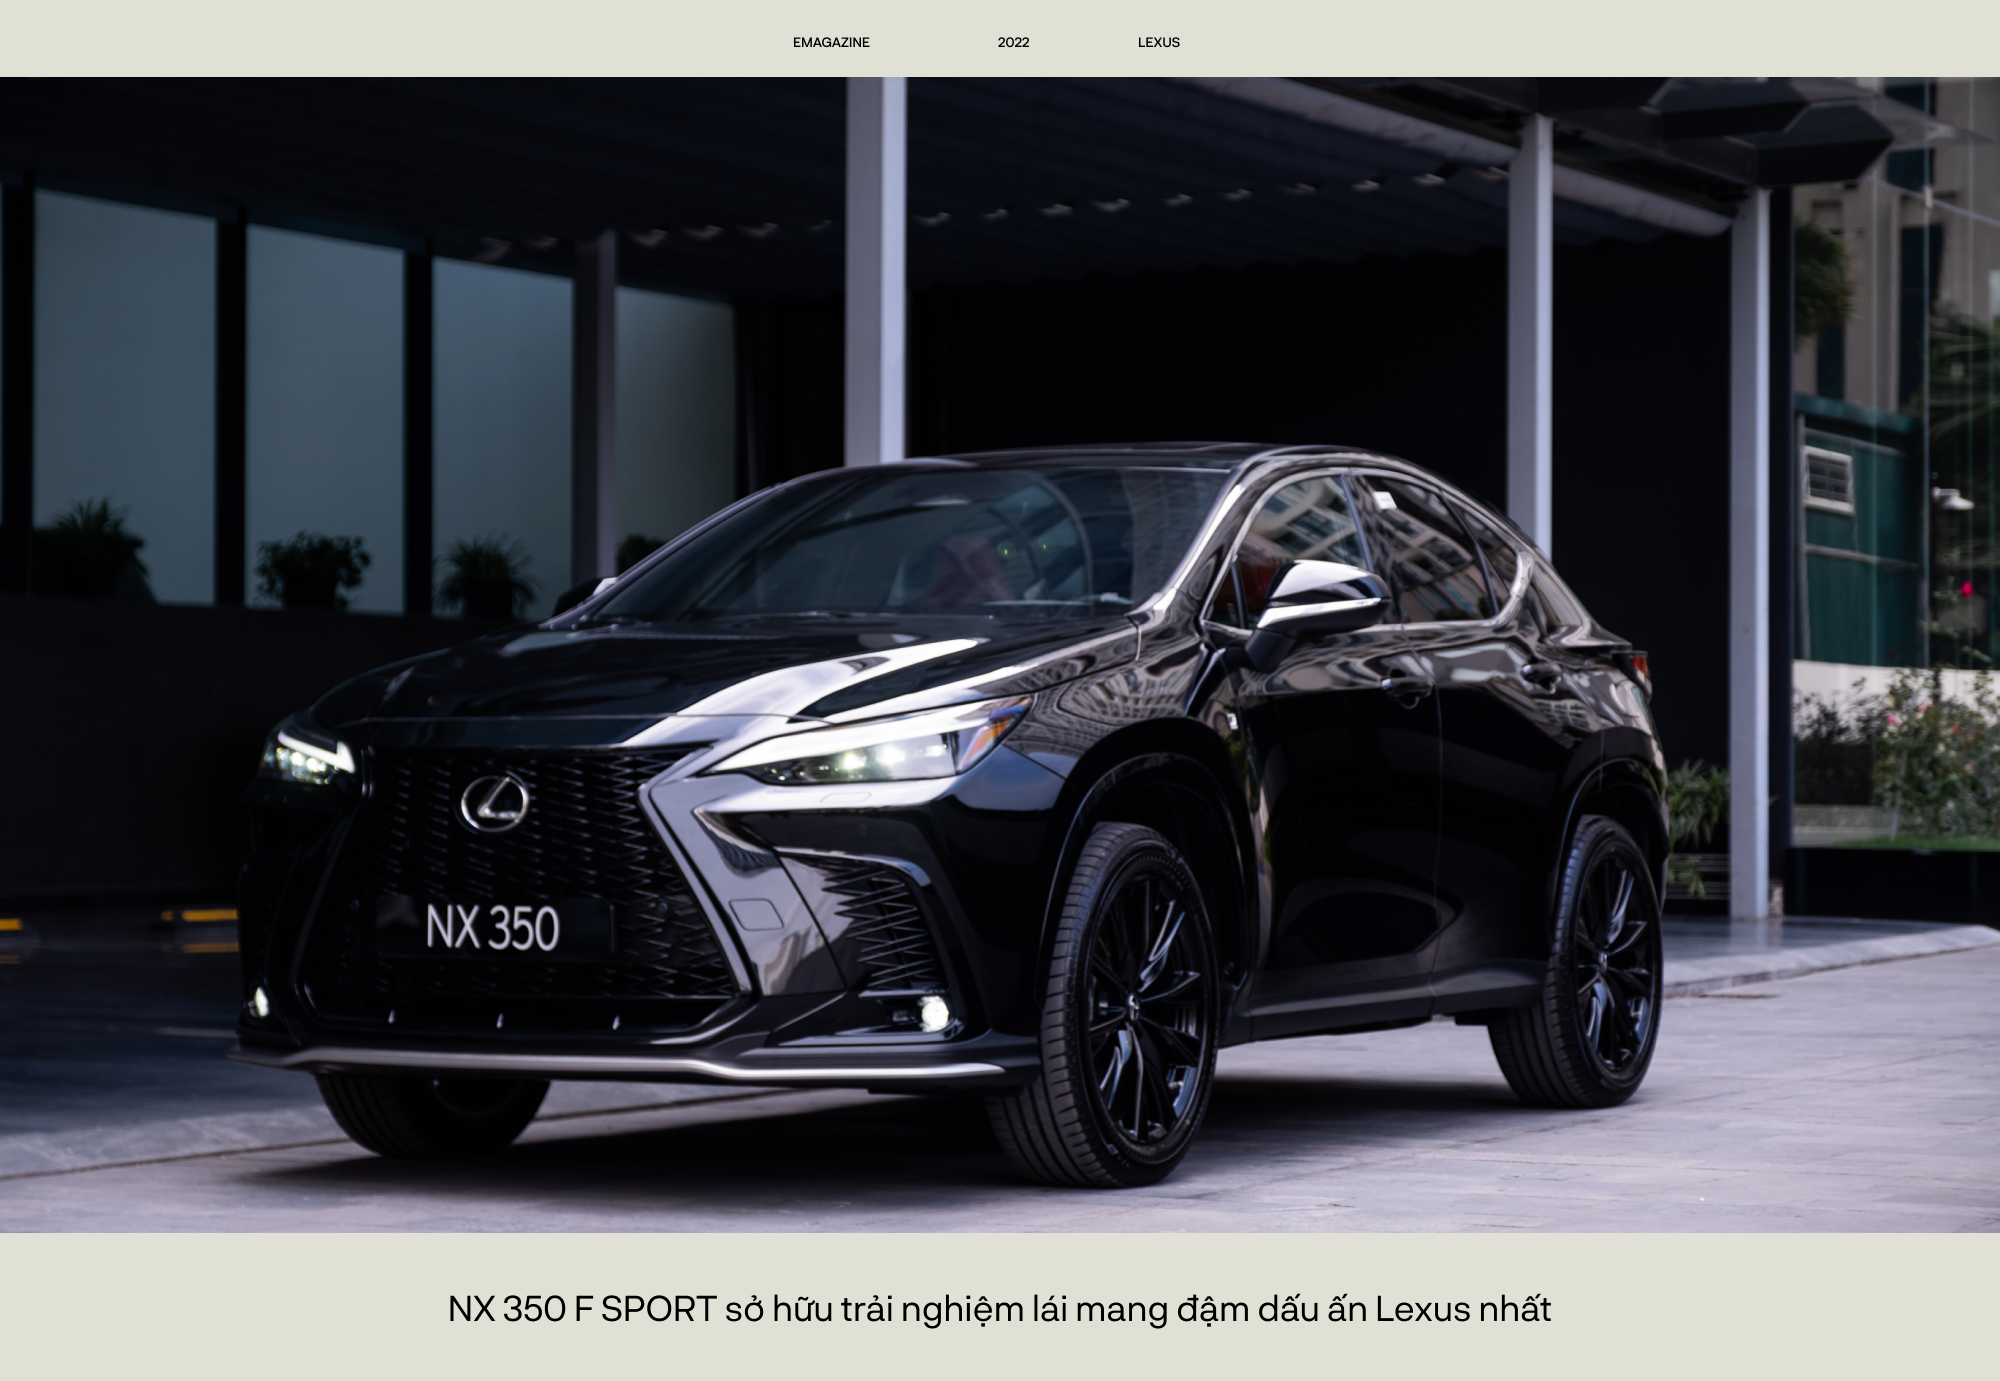 NX thành công nhờ vào những giá trị chưa từng có trên Lexus - Ảnh 9.